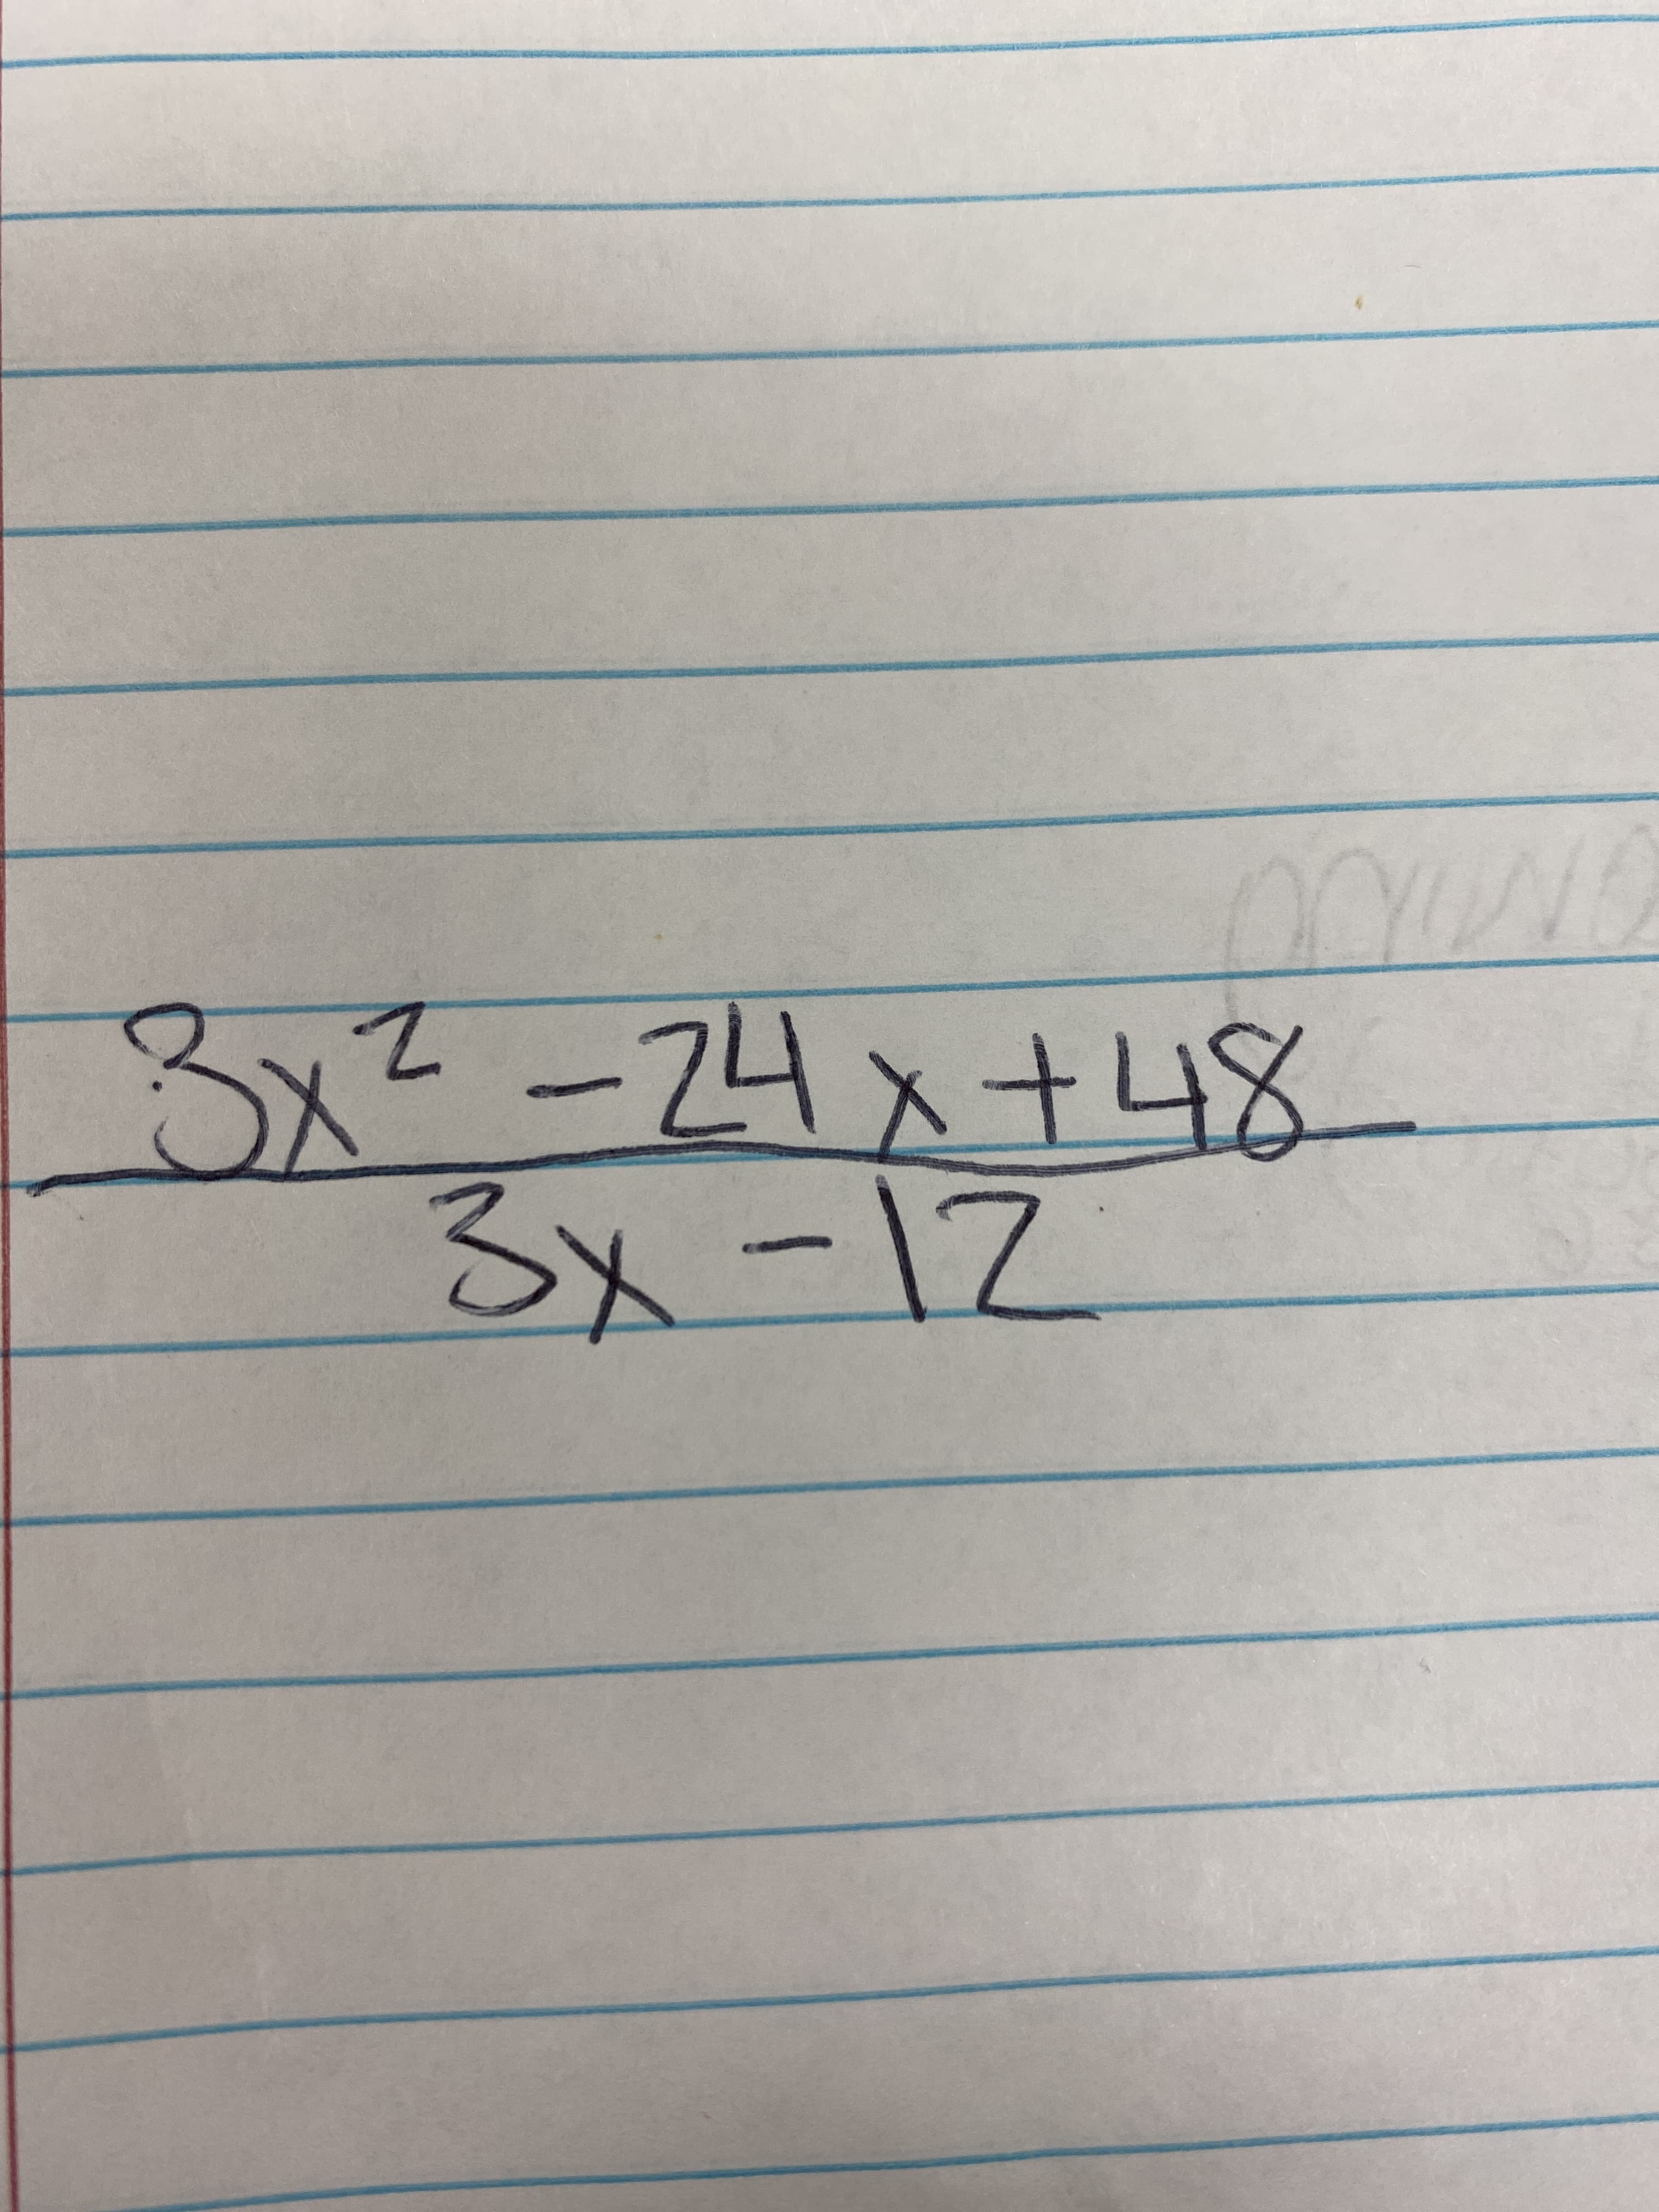 3x²-24x+48
3x-12
1.
